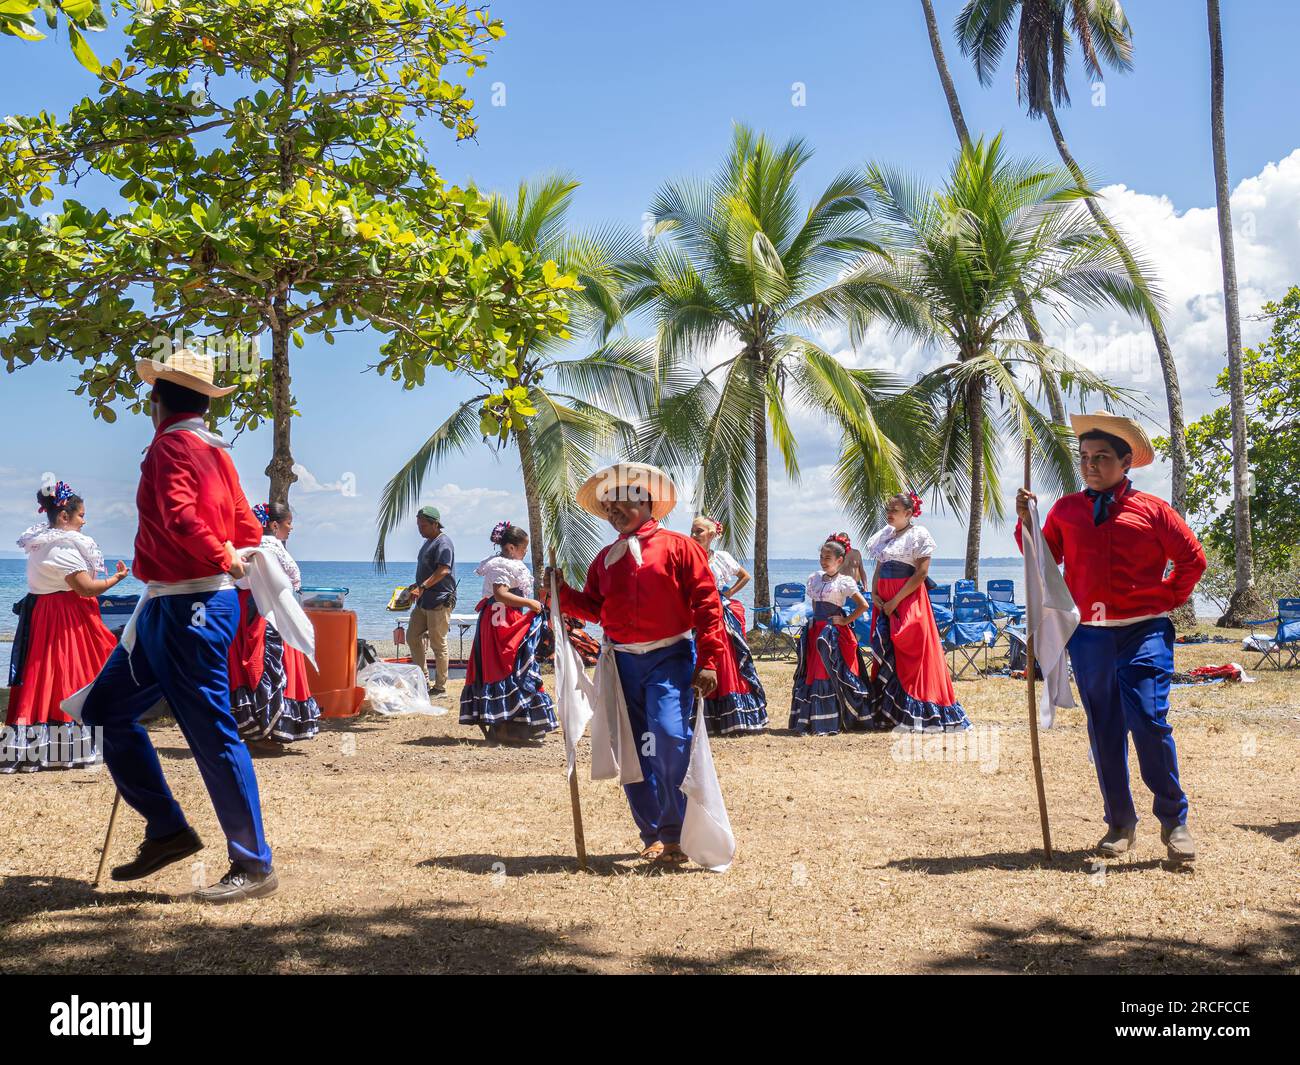 Un groupe de jeunes danseuses costaricaines en tenue traditionnelle se produit à Playa Blanca, El Golfito, Costa Rica. Banque D'Images